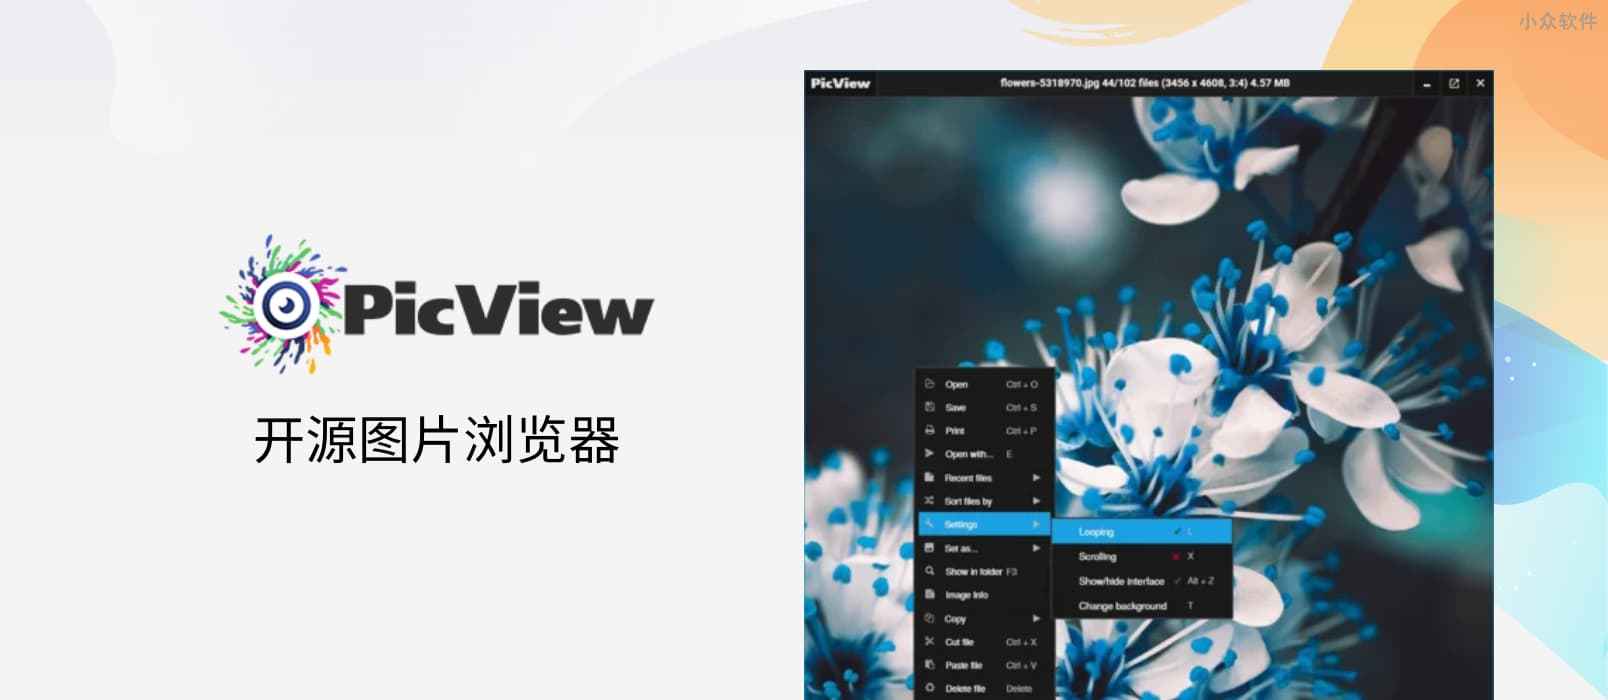 PicView – 开源图片浏览器，可查看压缩包图片，快速、“小巧”[Windows]